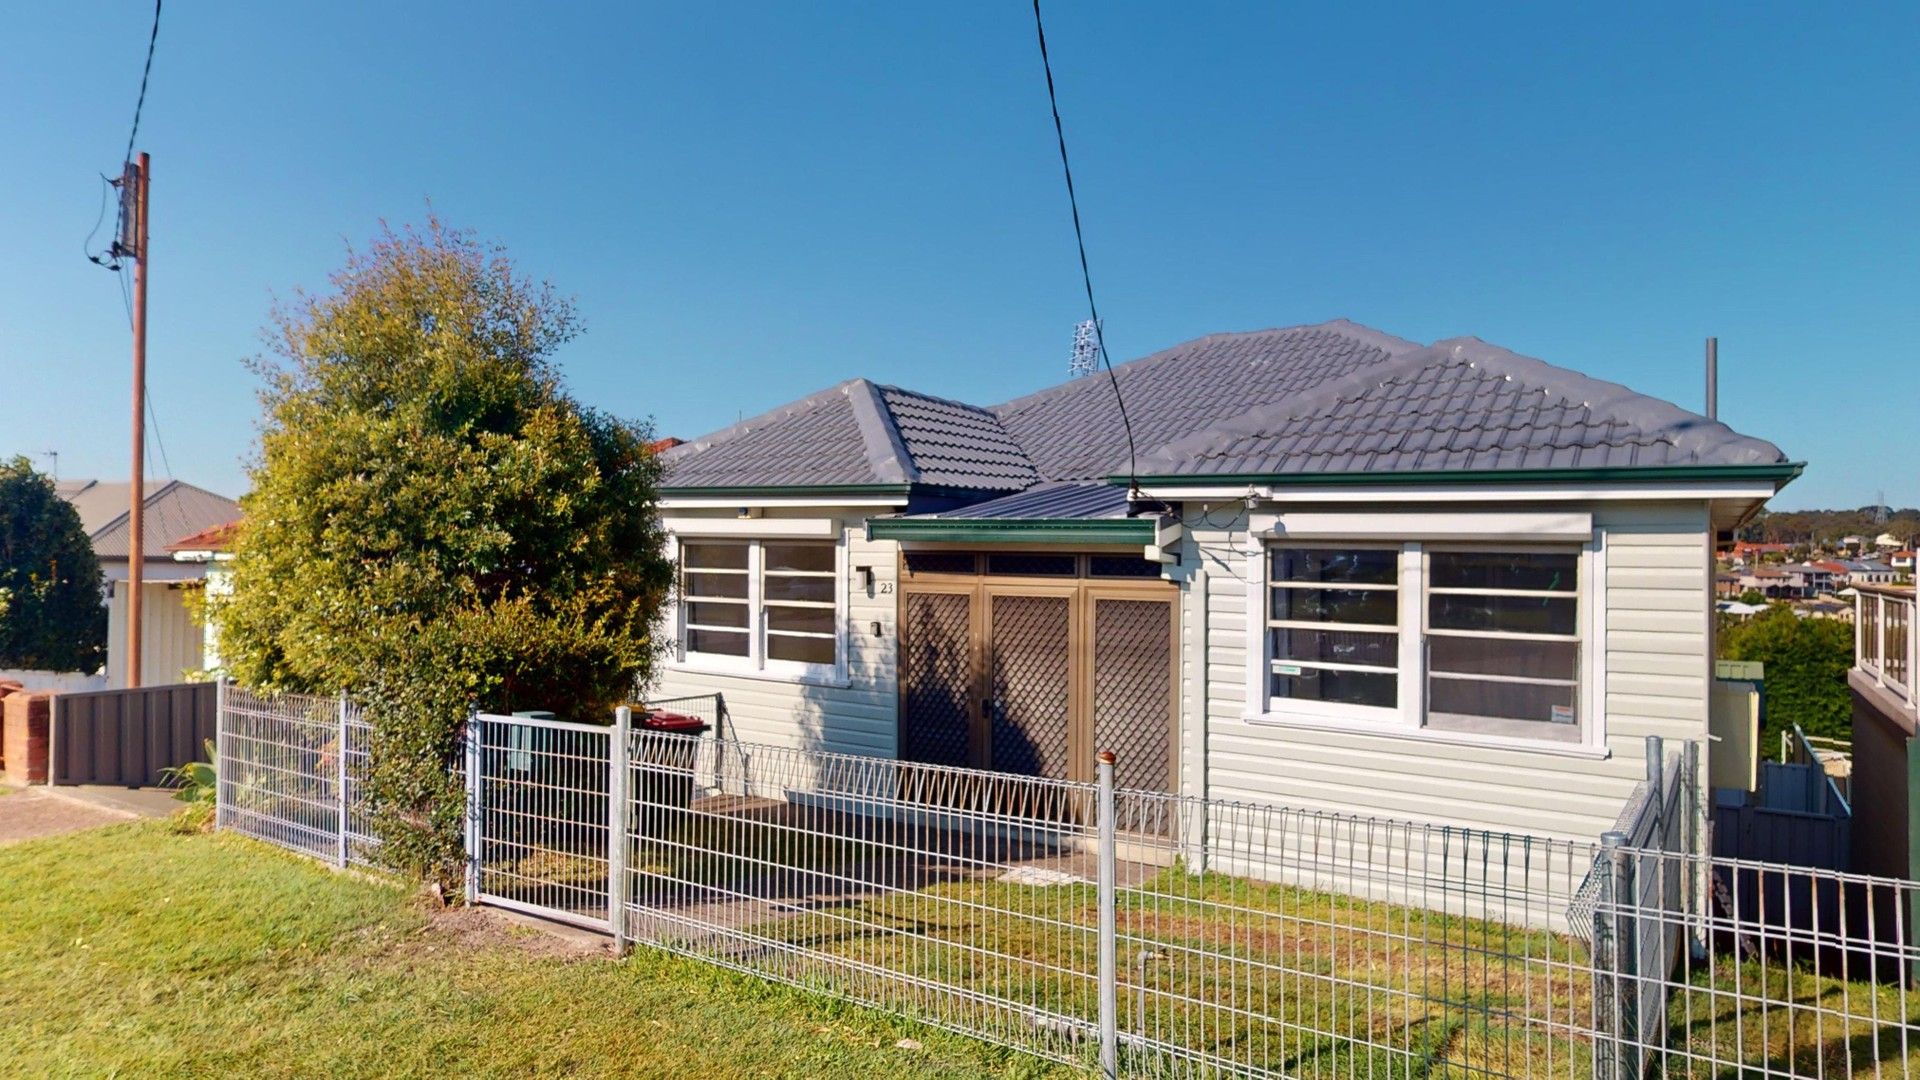 3 bedrooms House in 23 Brisbane Water Road ADAMSTOWN NSW, 2289